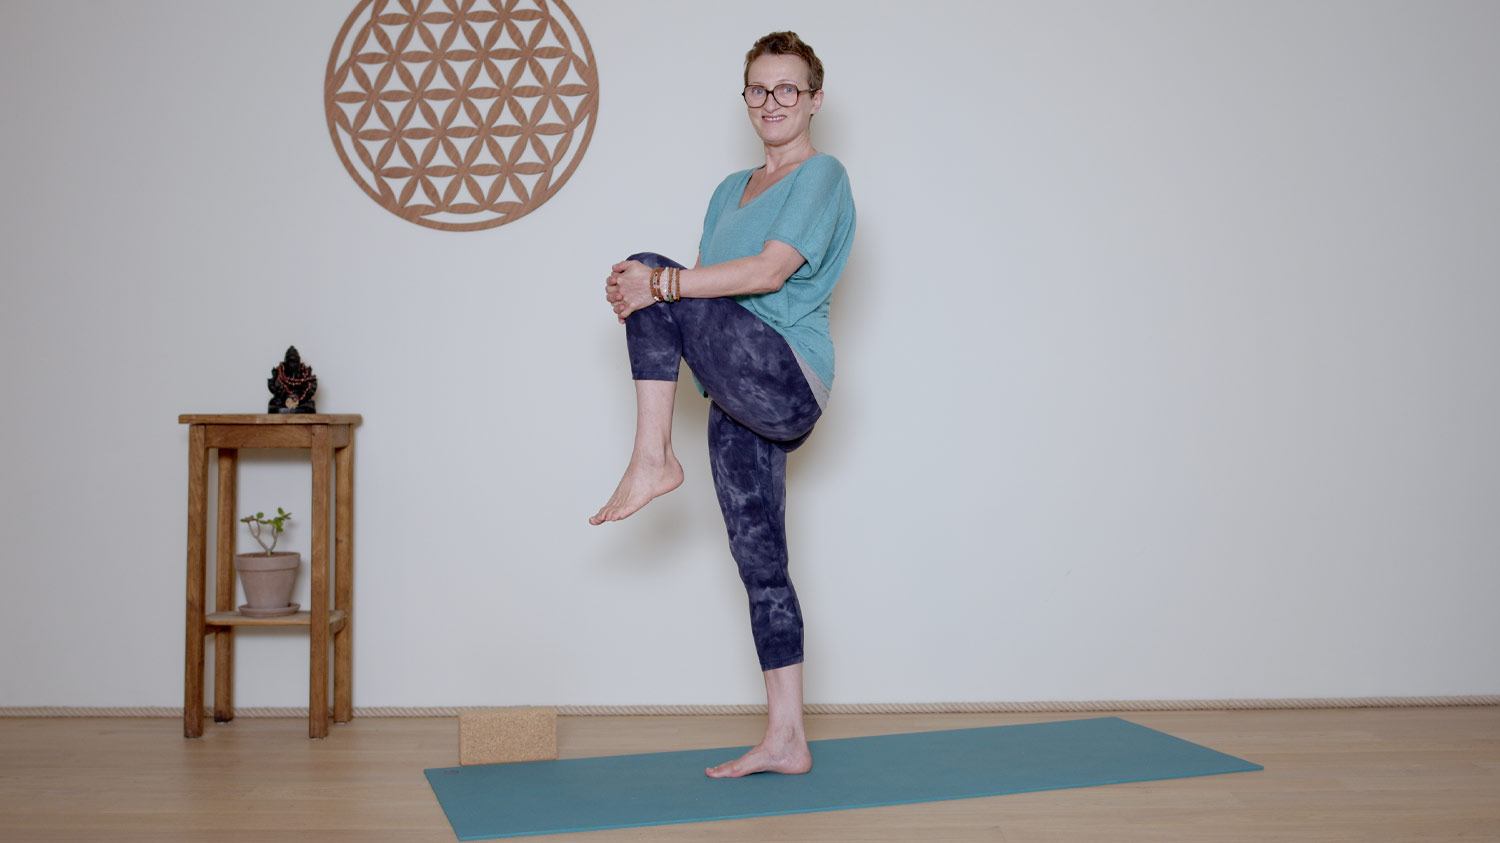 Séance complète - 45 min - Corps physique | Cours de yoga en ligne avec Delphine Denis | Hatha Yoga dynamique, Méditation, Pranayama